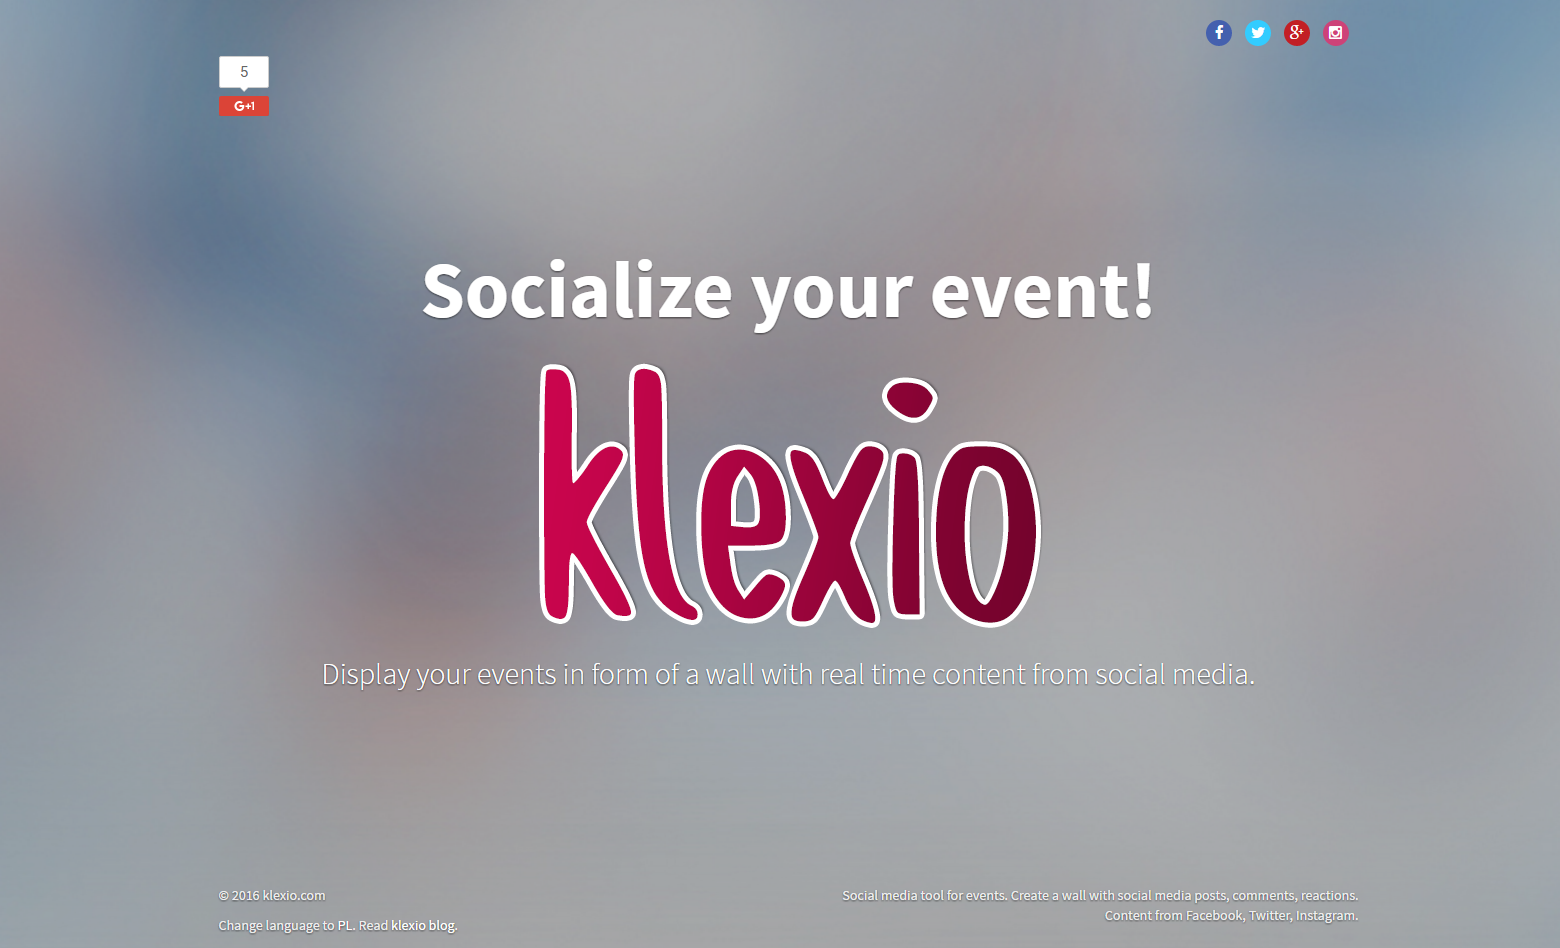 Projekt klexio.com